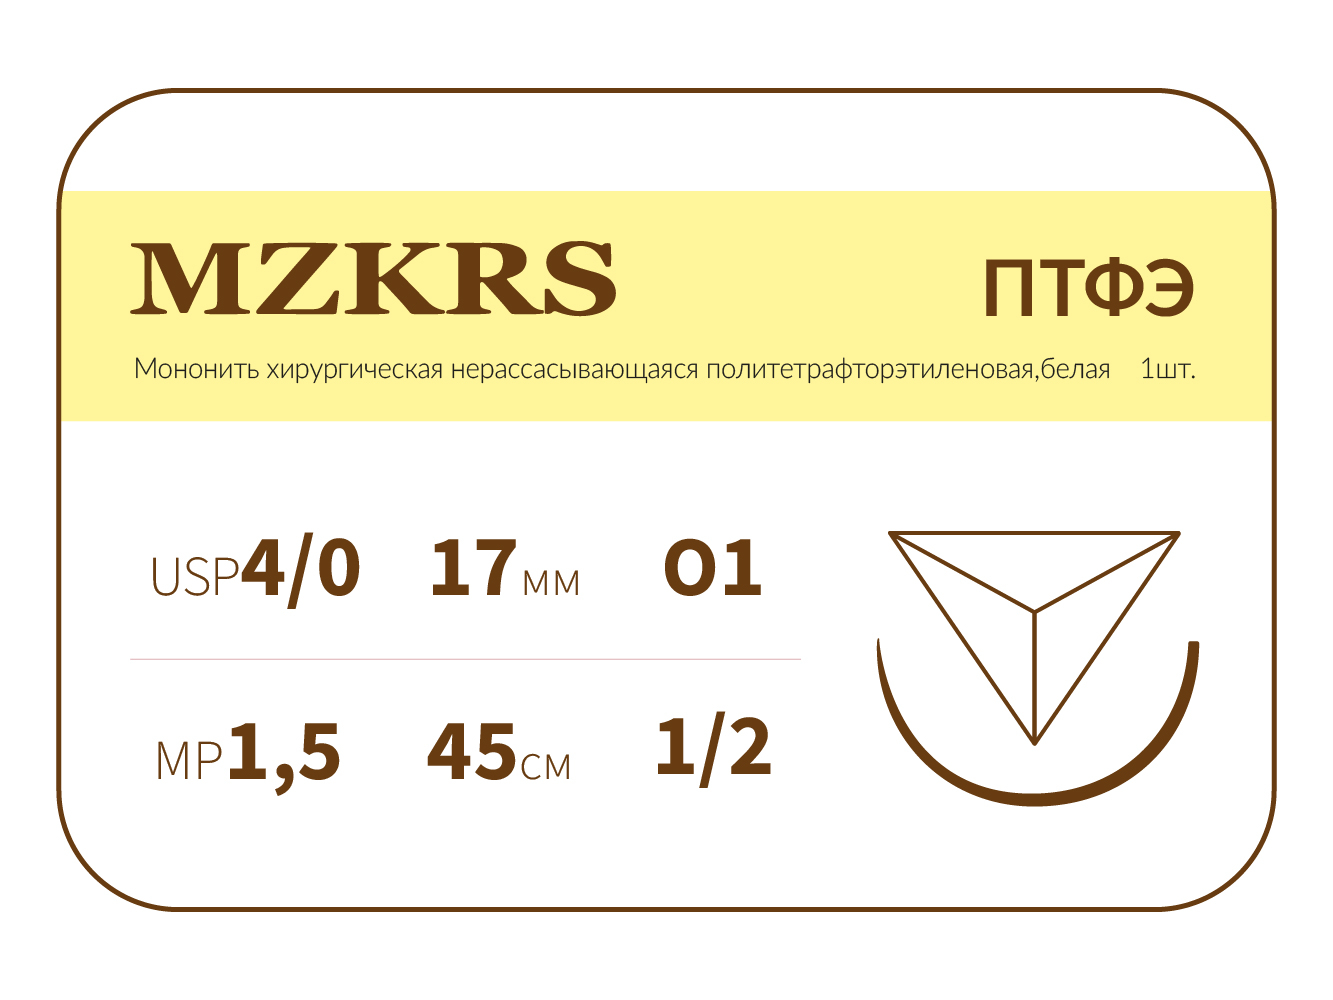 1712О1-Premium 4/0 (1.5) 45 ПТФЭ хирургическая нить политетрафторэтиленовая, MZKRS (Россия)